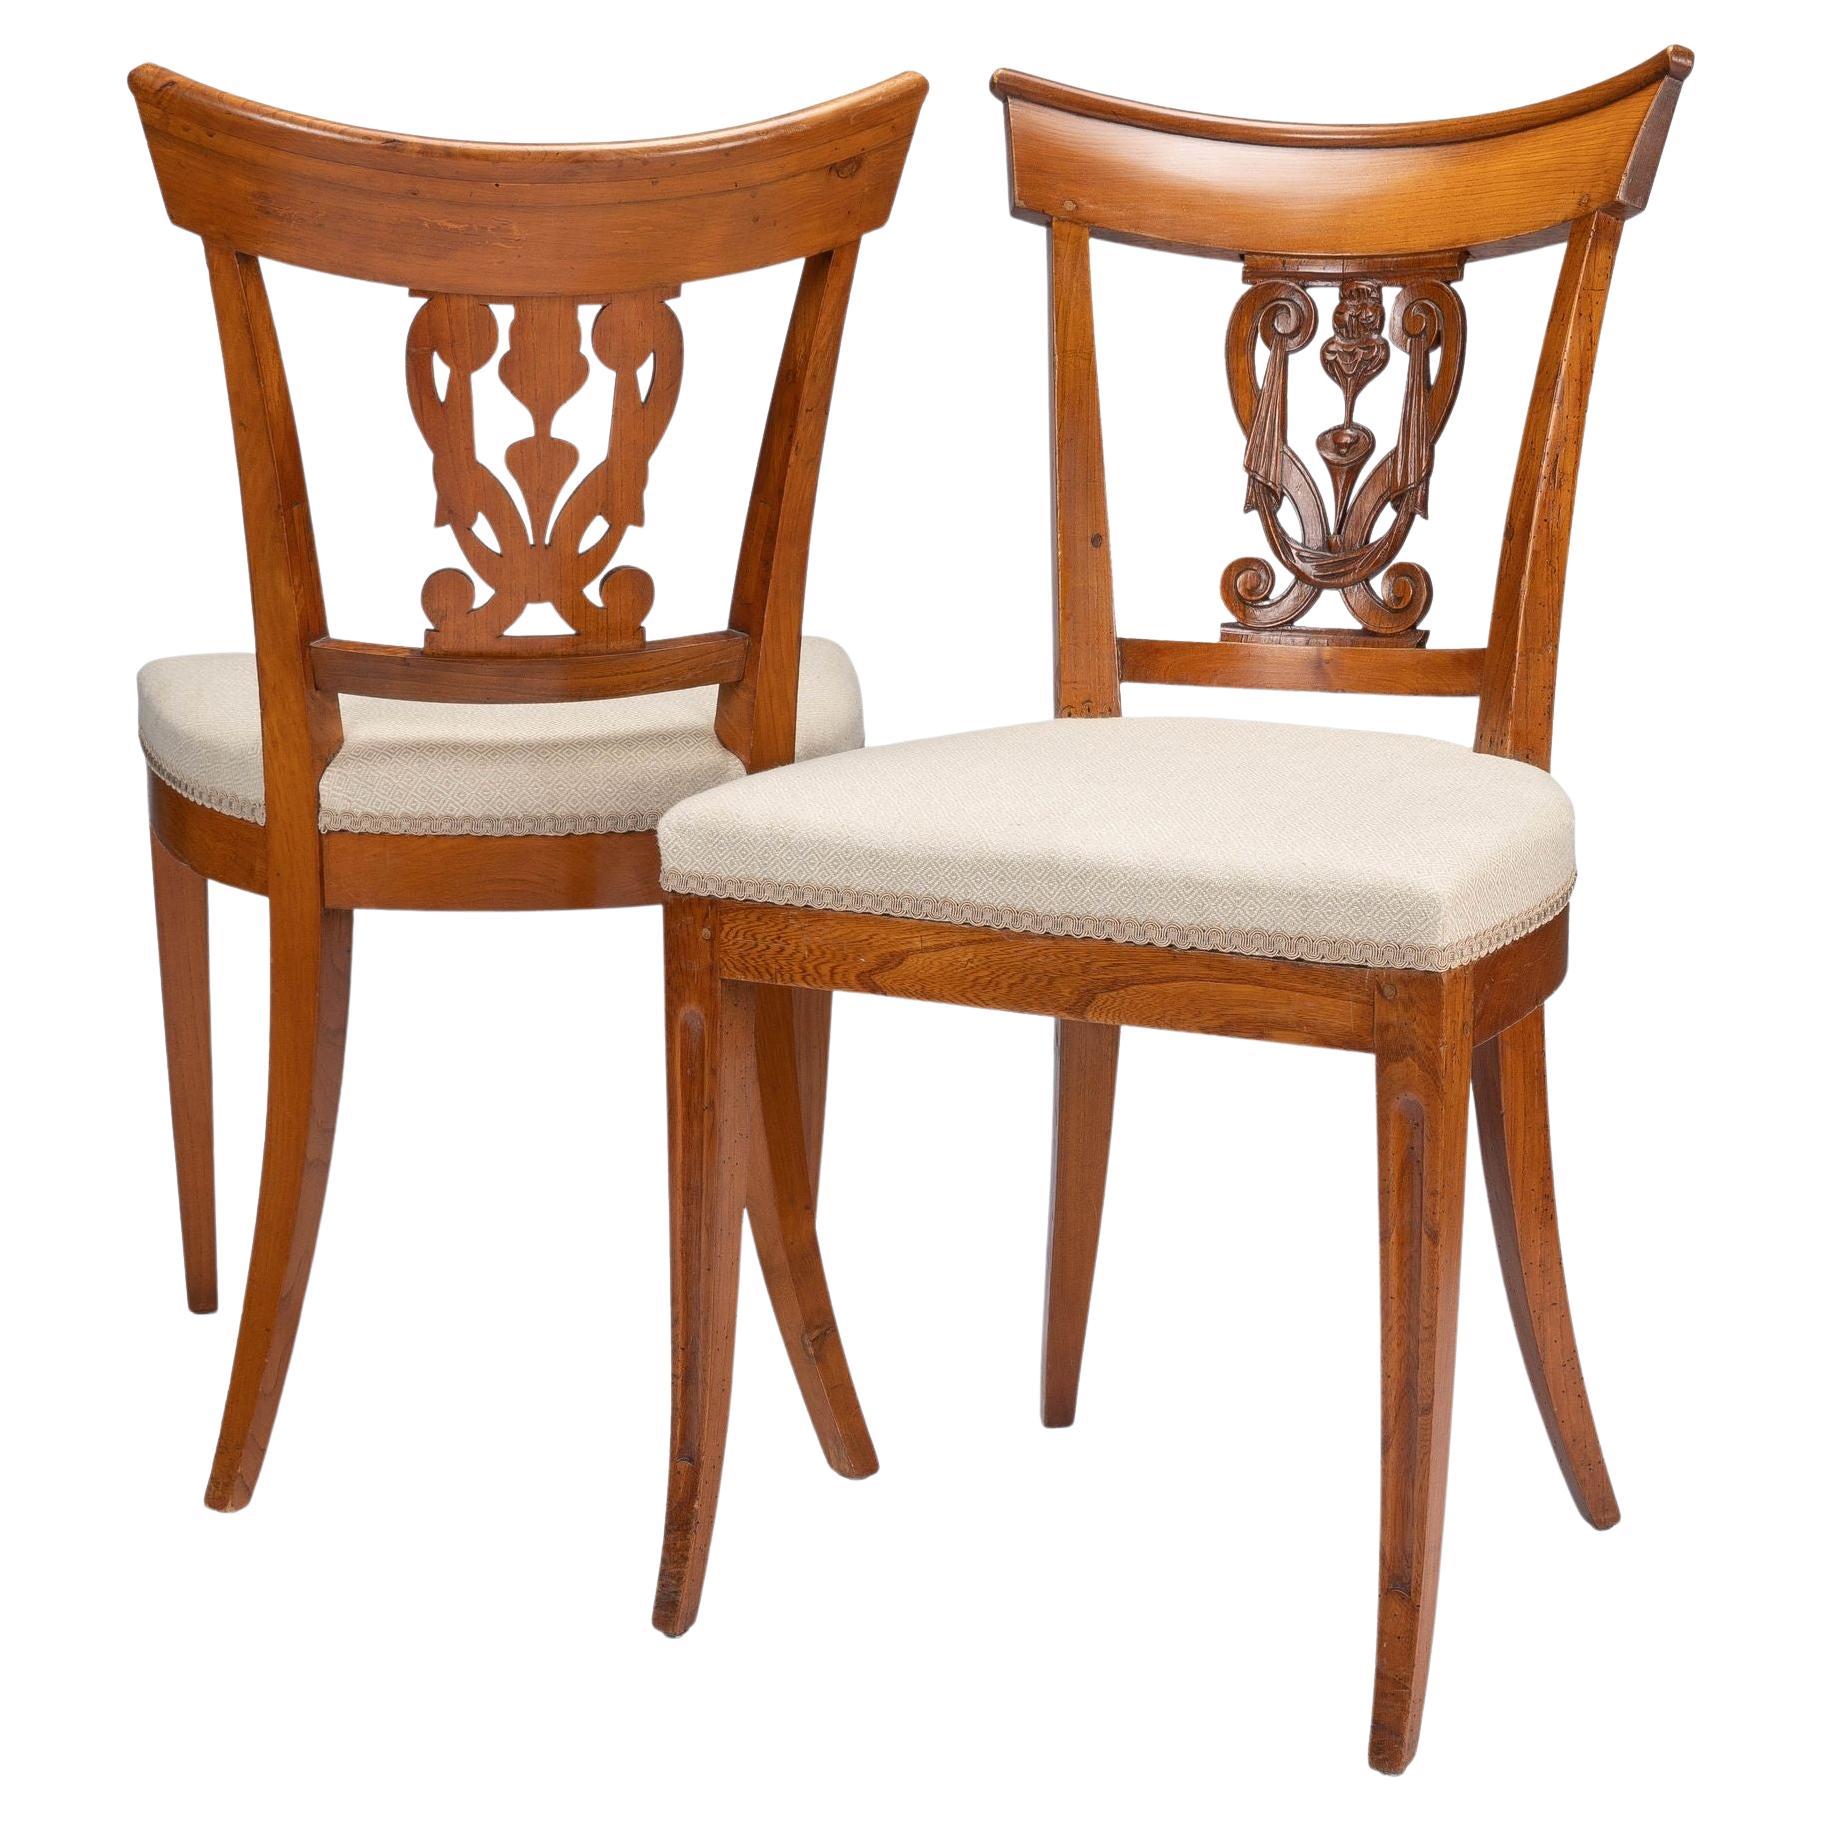 Paire de chaises d'appoint tapissées de style néoclassique français, vers 1795-1810